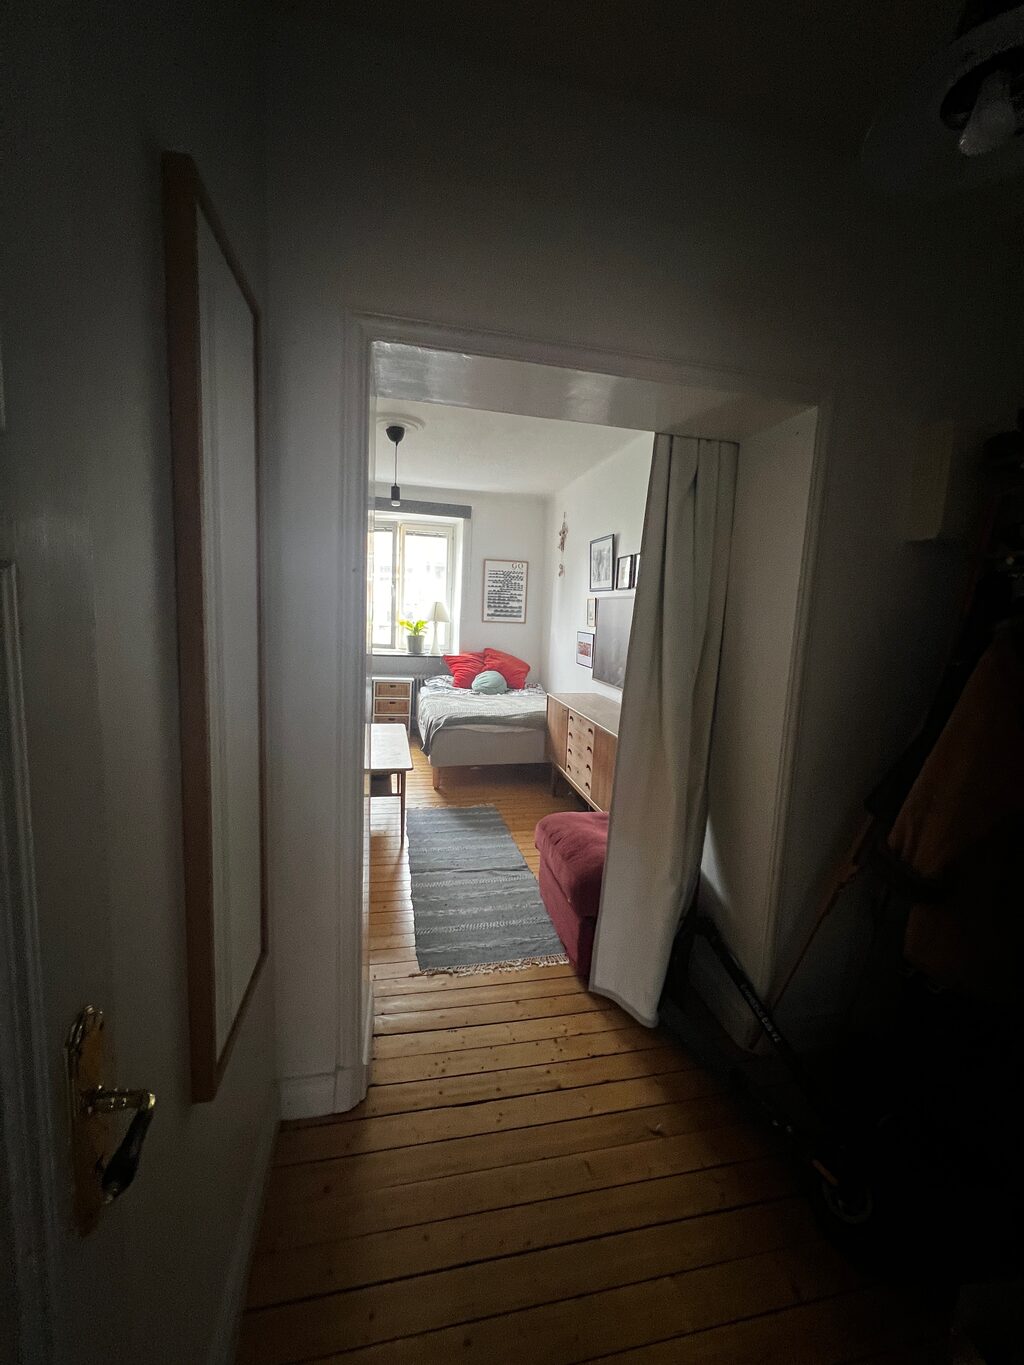 Lägenhetsbyte - Karl Johansgatan 63, 414 55 Göteborg